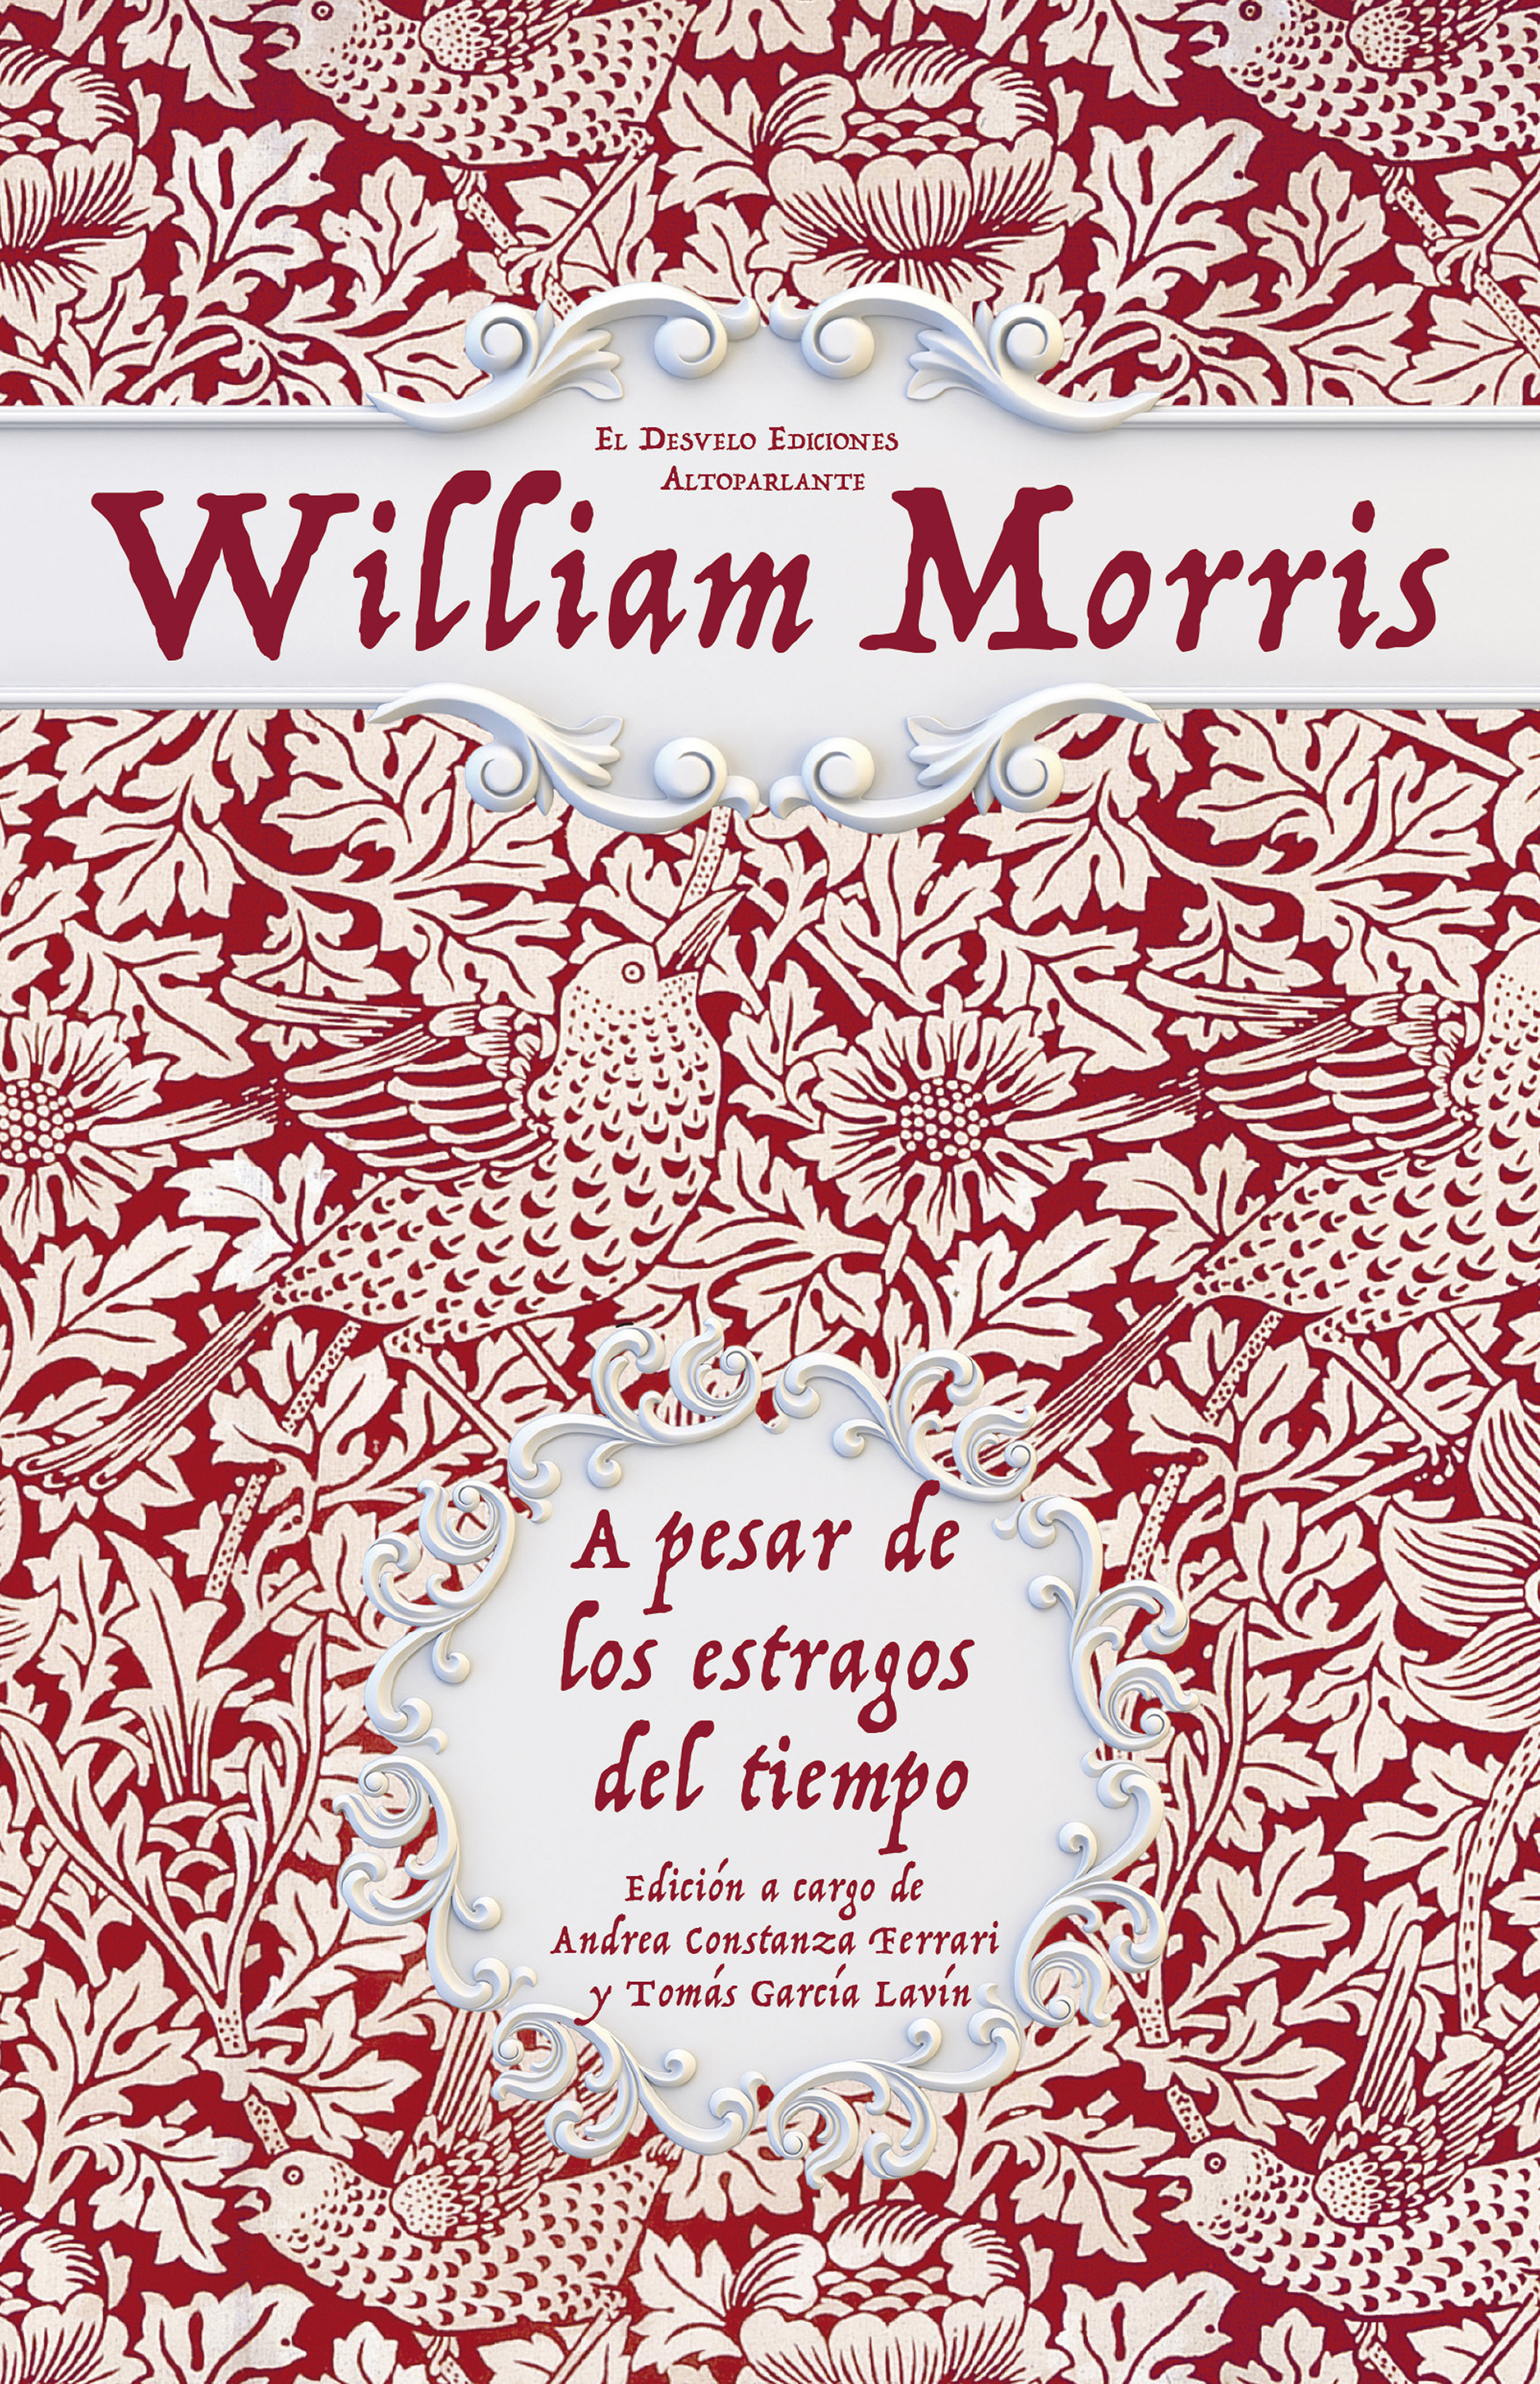 Скачать A pesar de los estragos del tiempo - William Morris